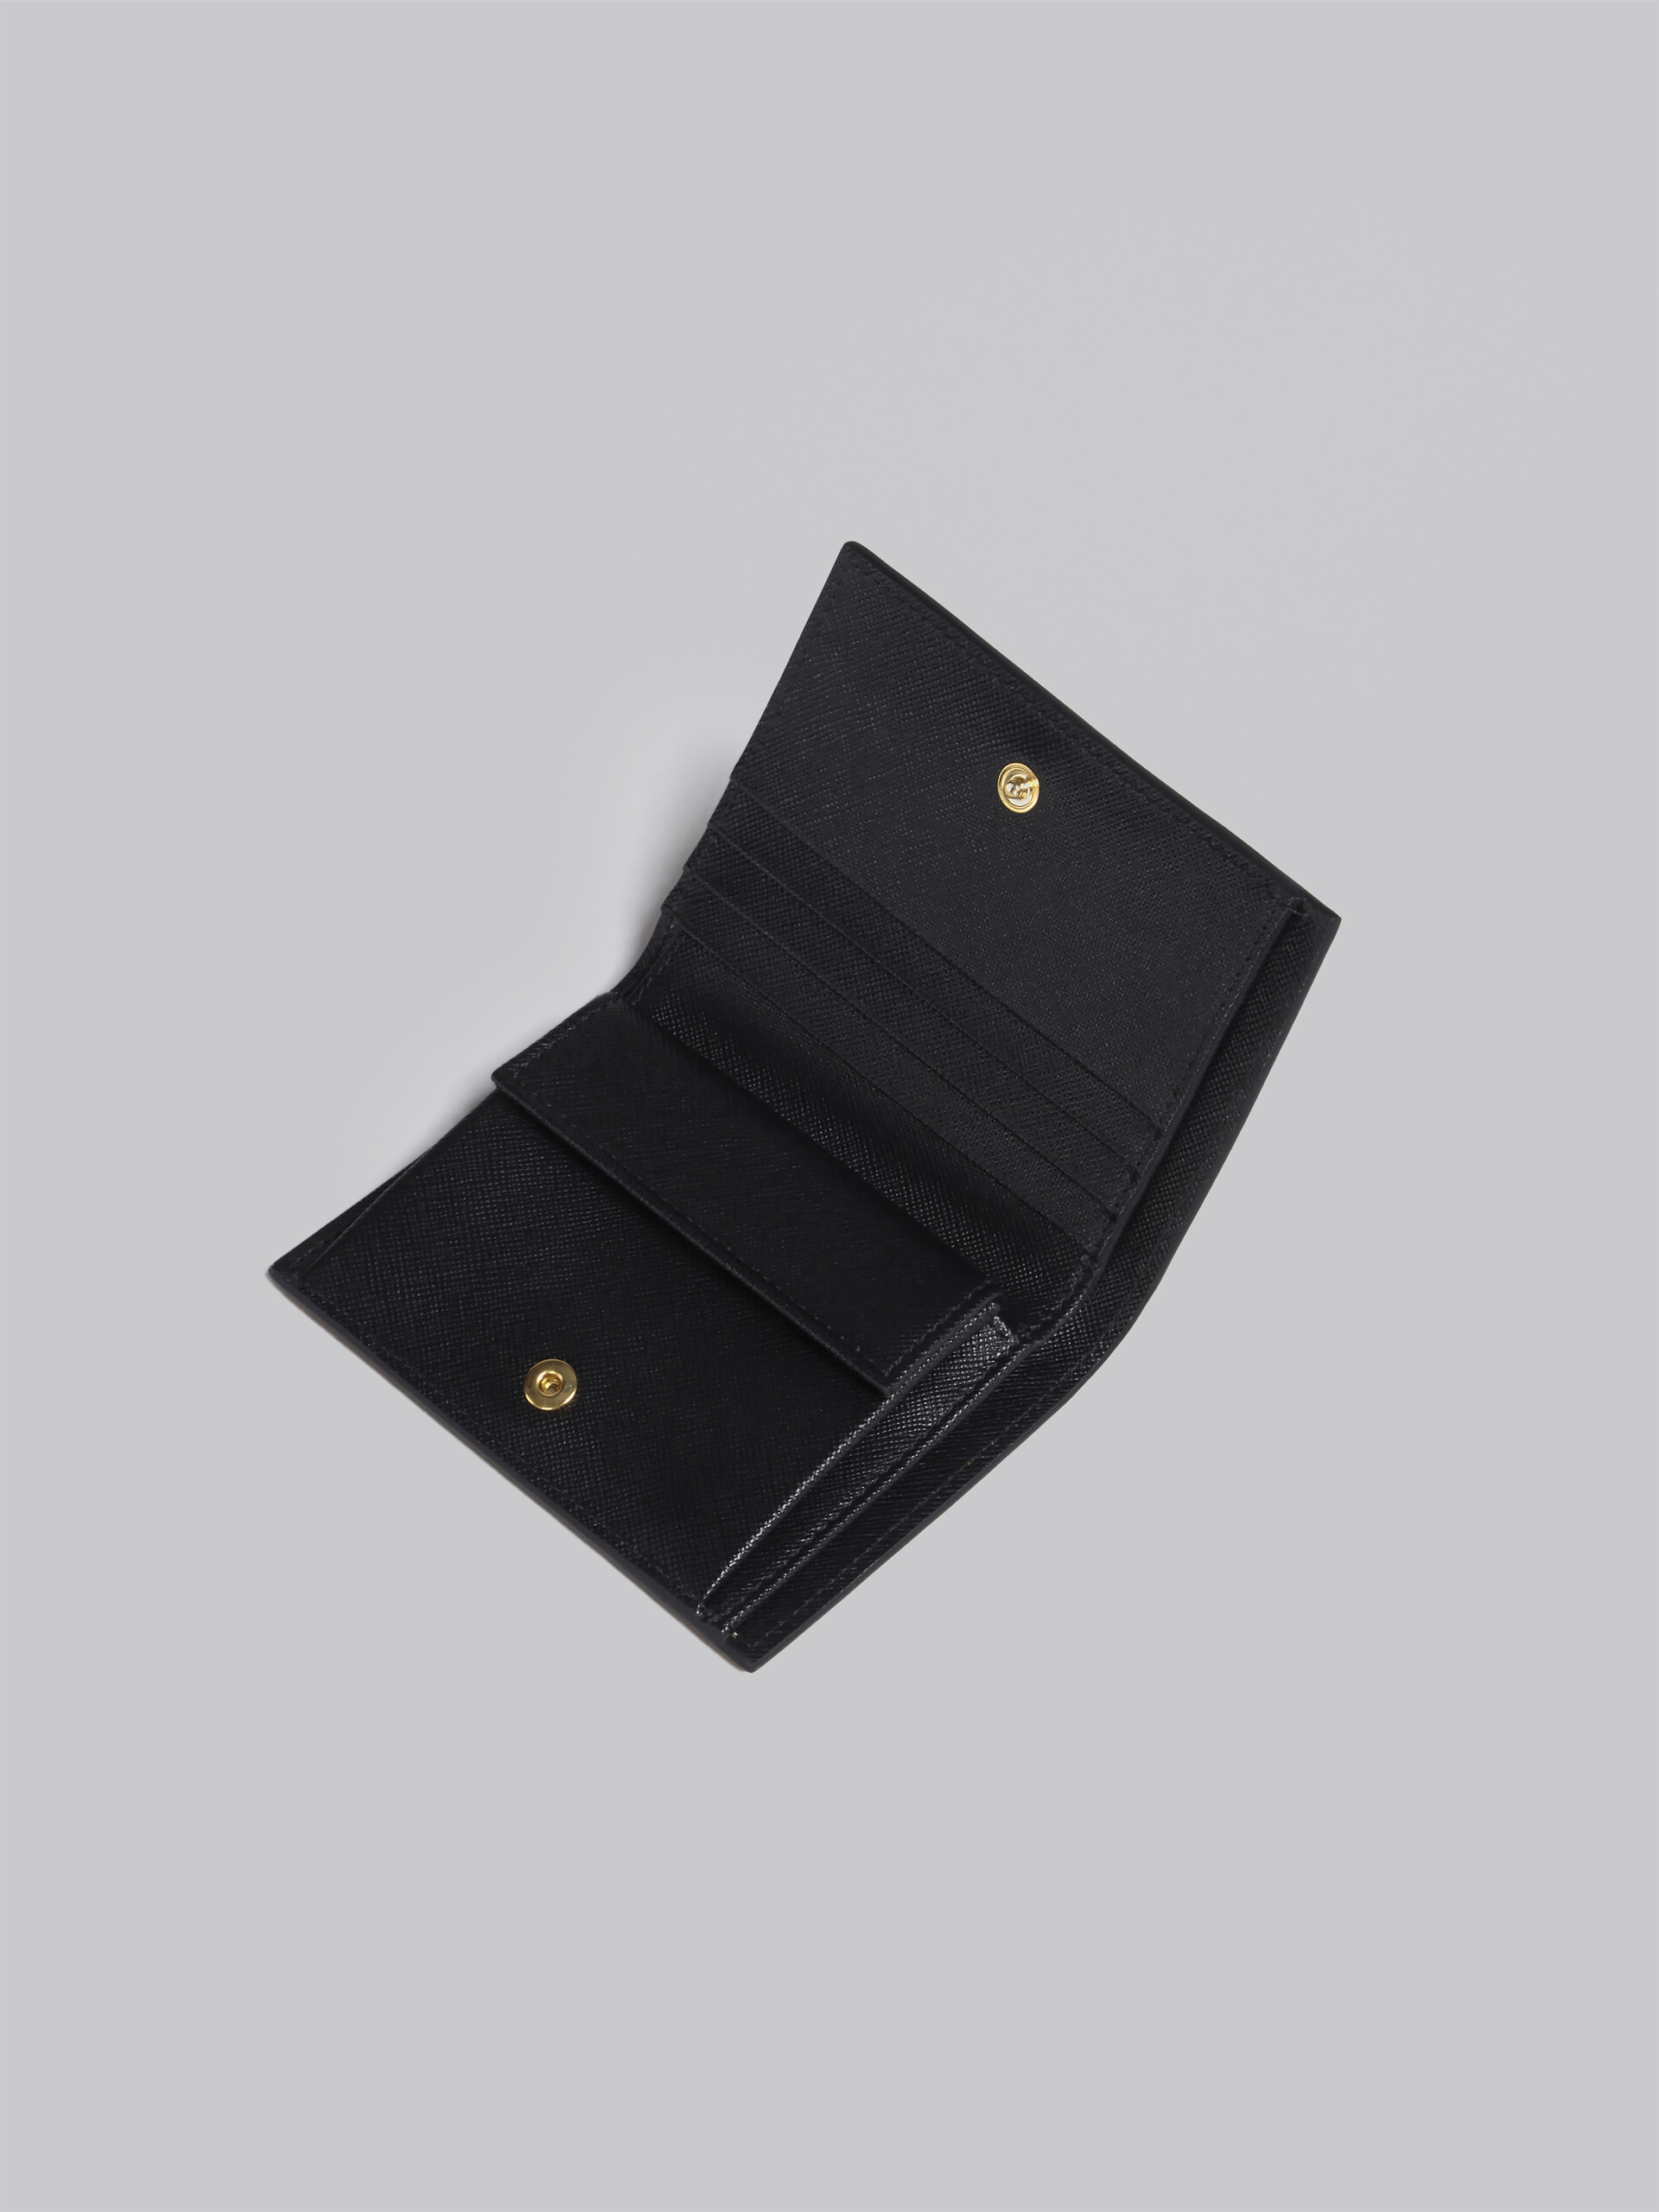 ブラウン ライラック ブラック サフィアーノレザー製 二つ折りウォレット - 財布 - Image 4